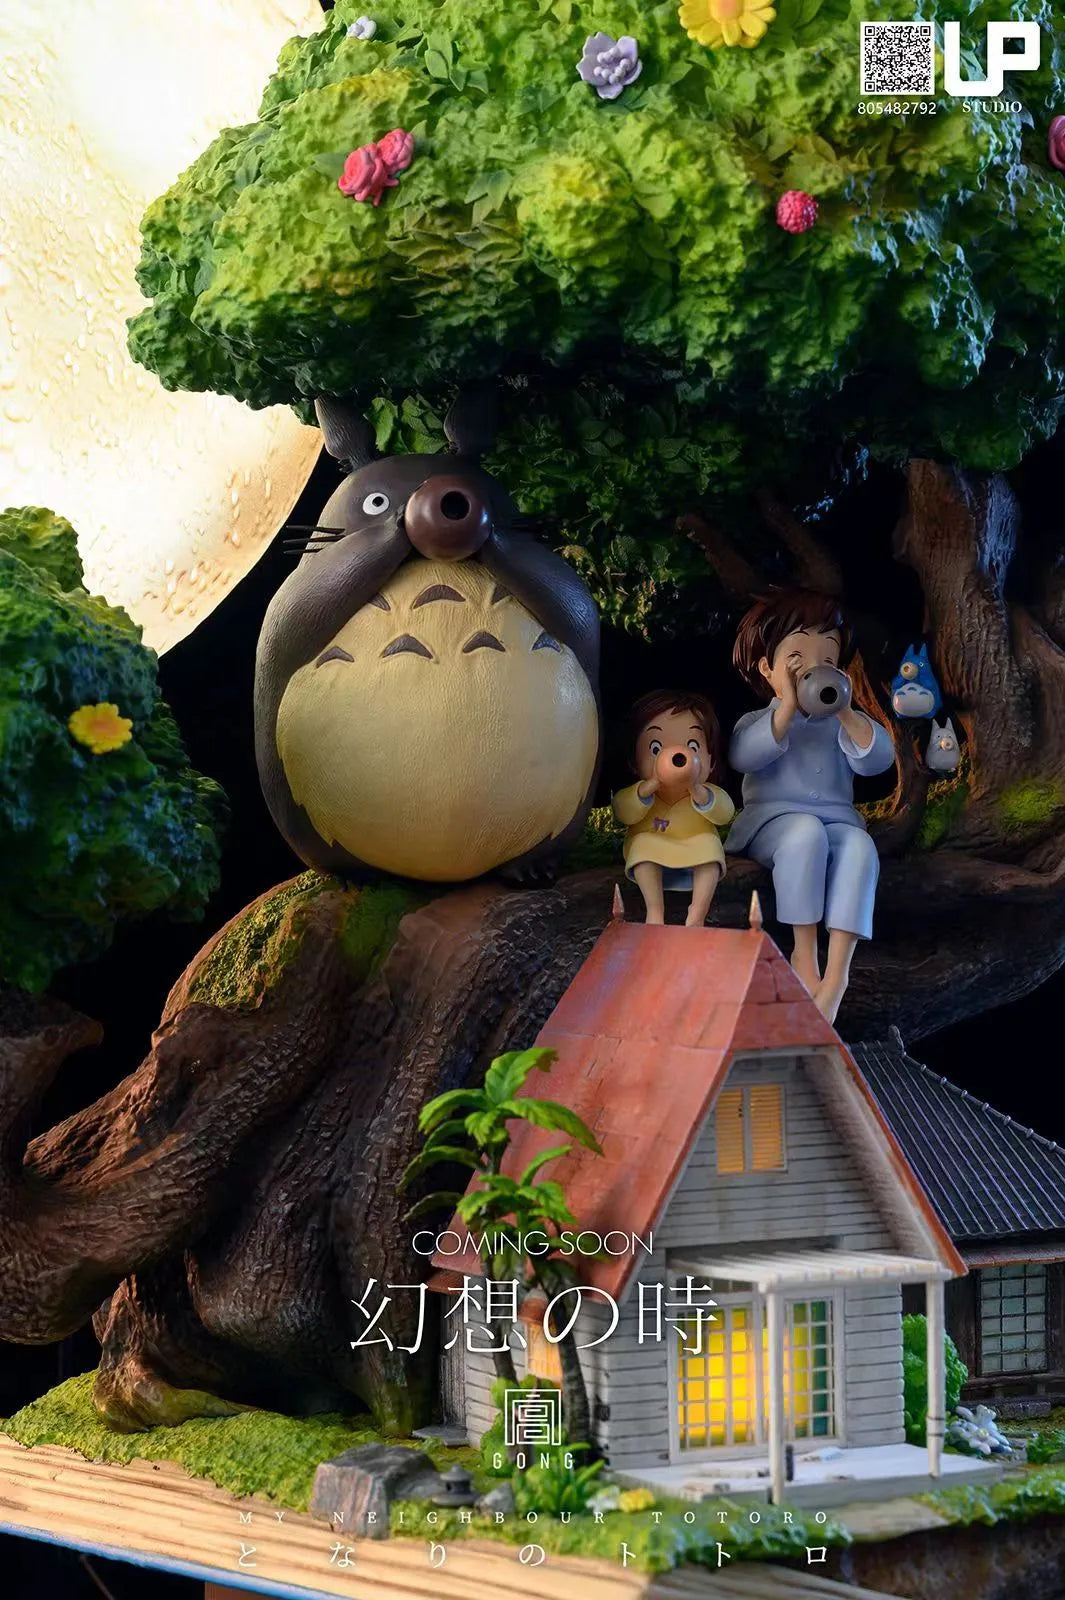 Studio Ghibli: UP Studio My Neighbor Totoro